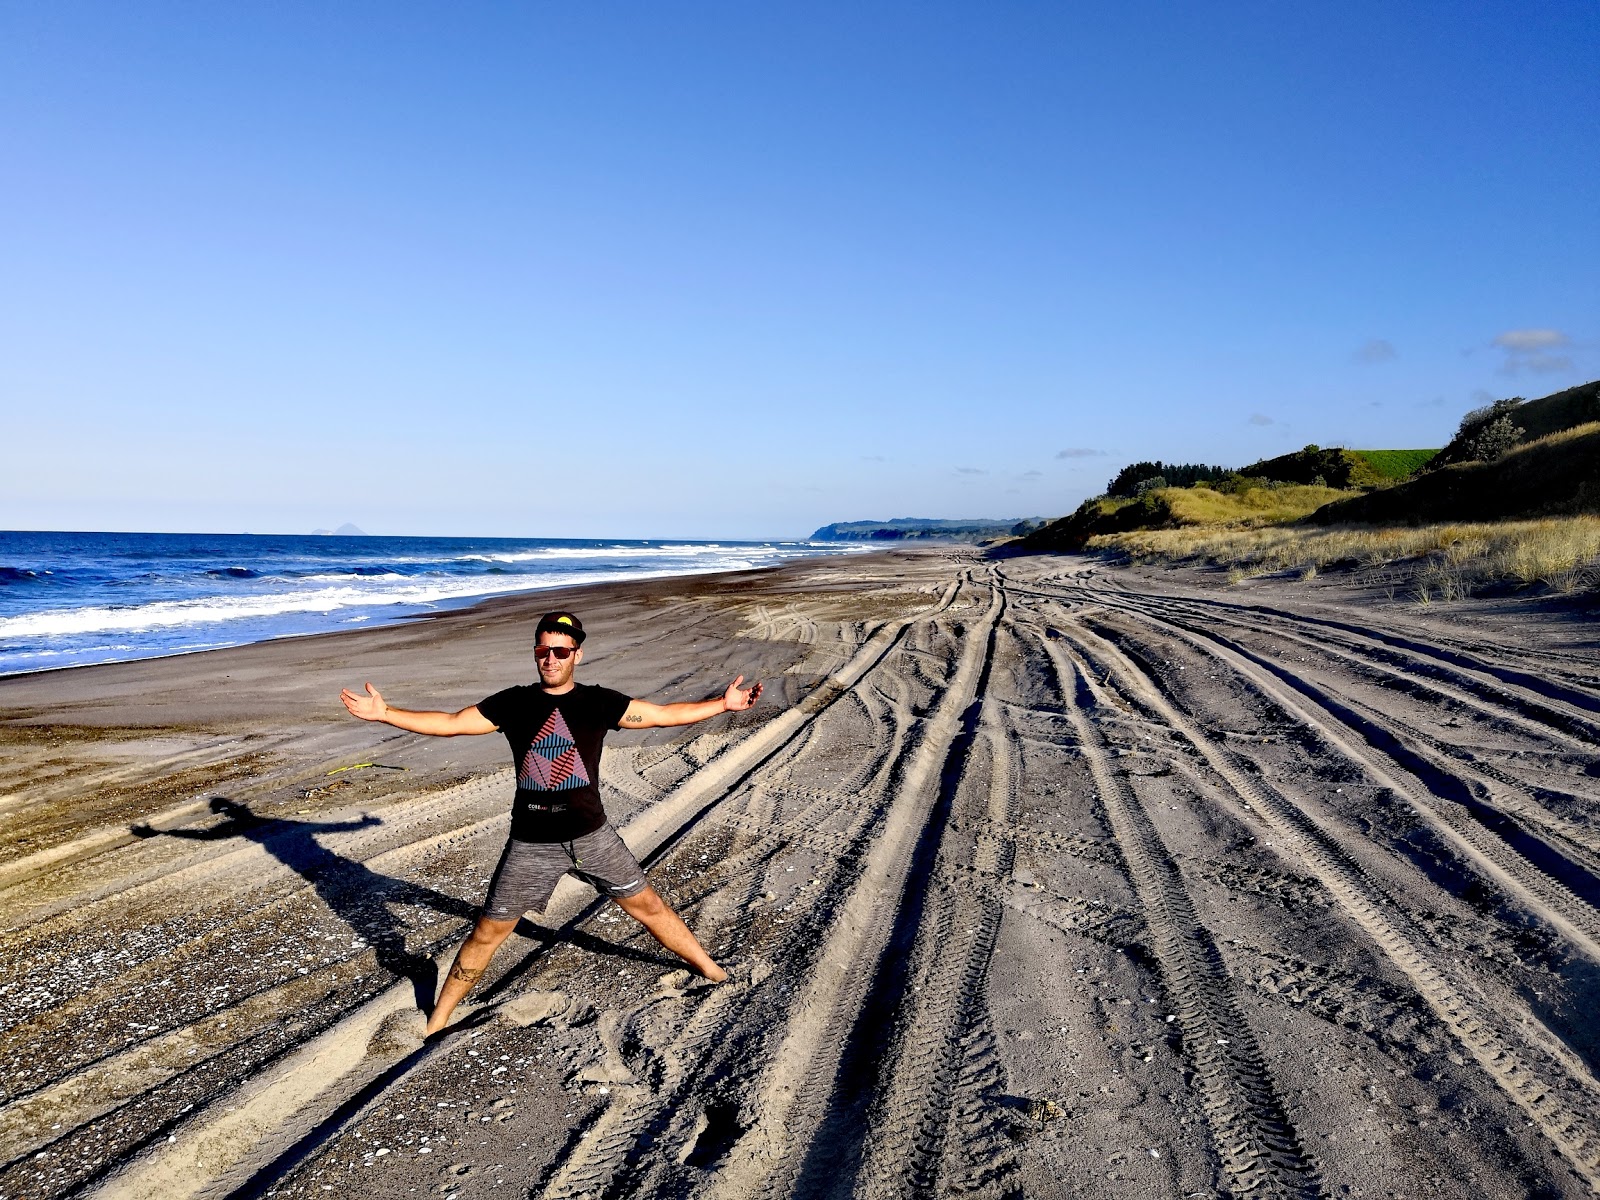 Foto de Otamarakau Beach Access - lugar popular entre los conocedores del relax